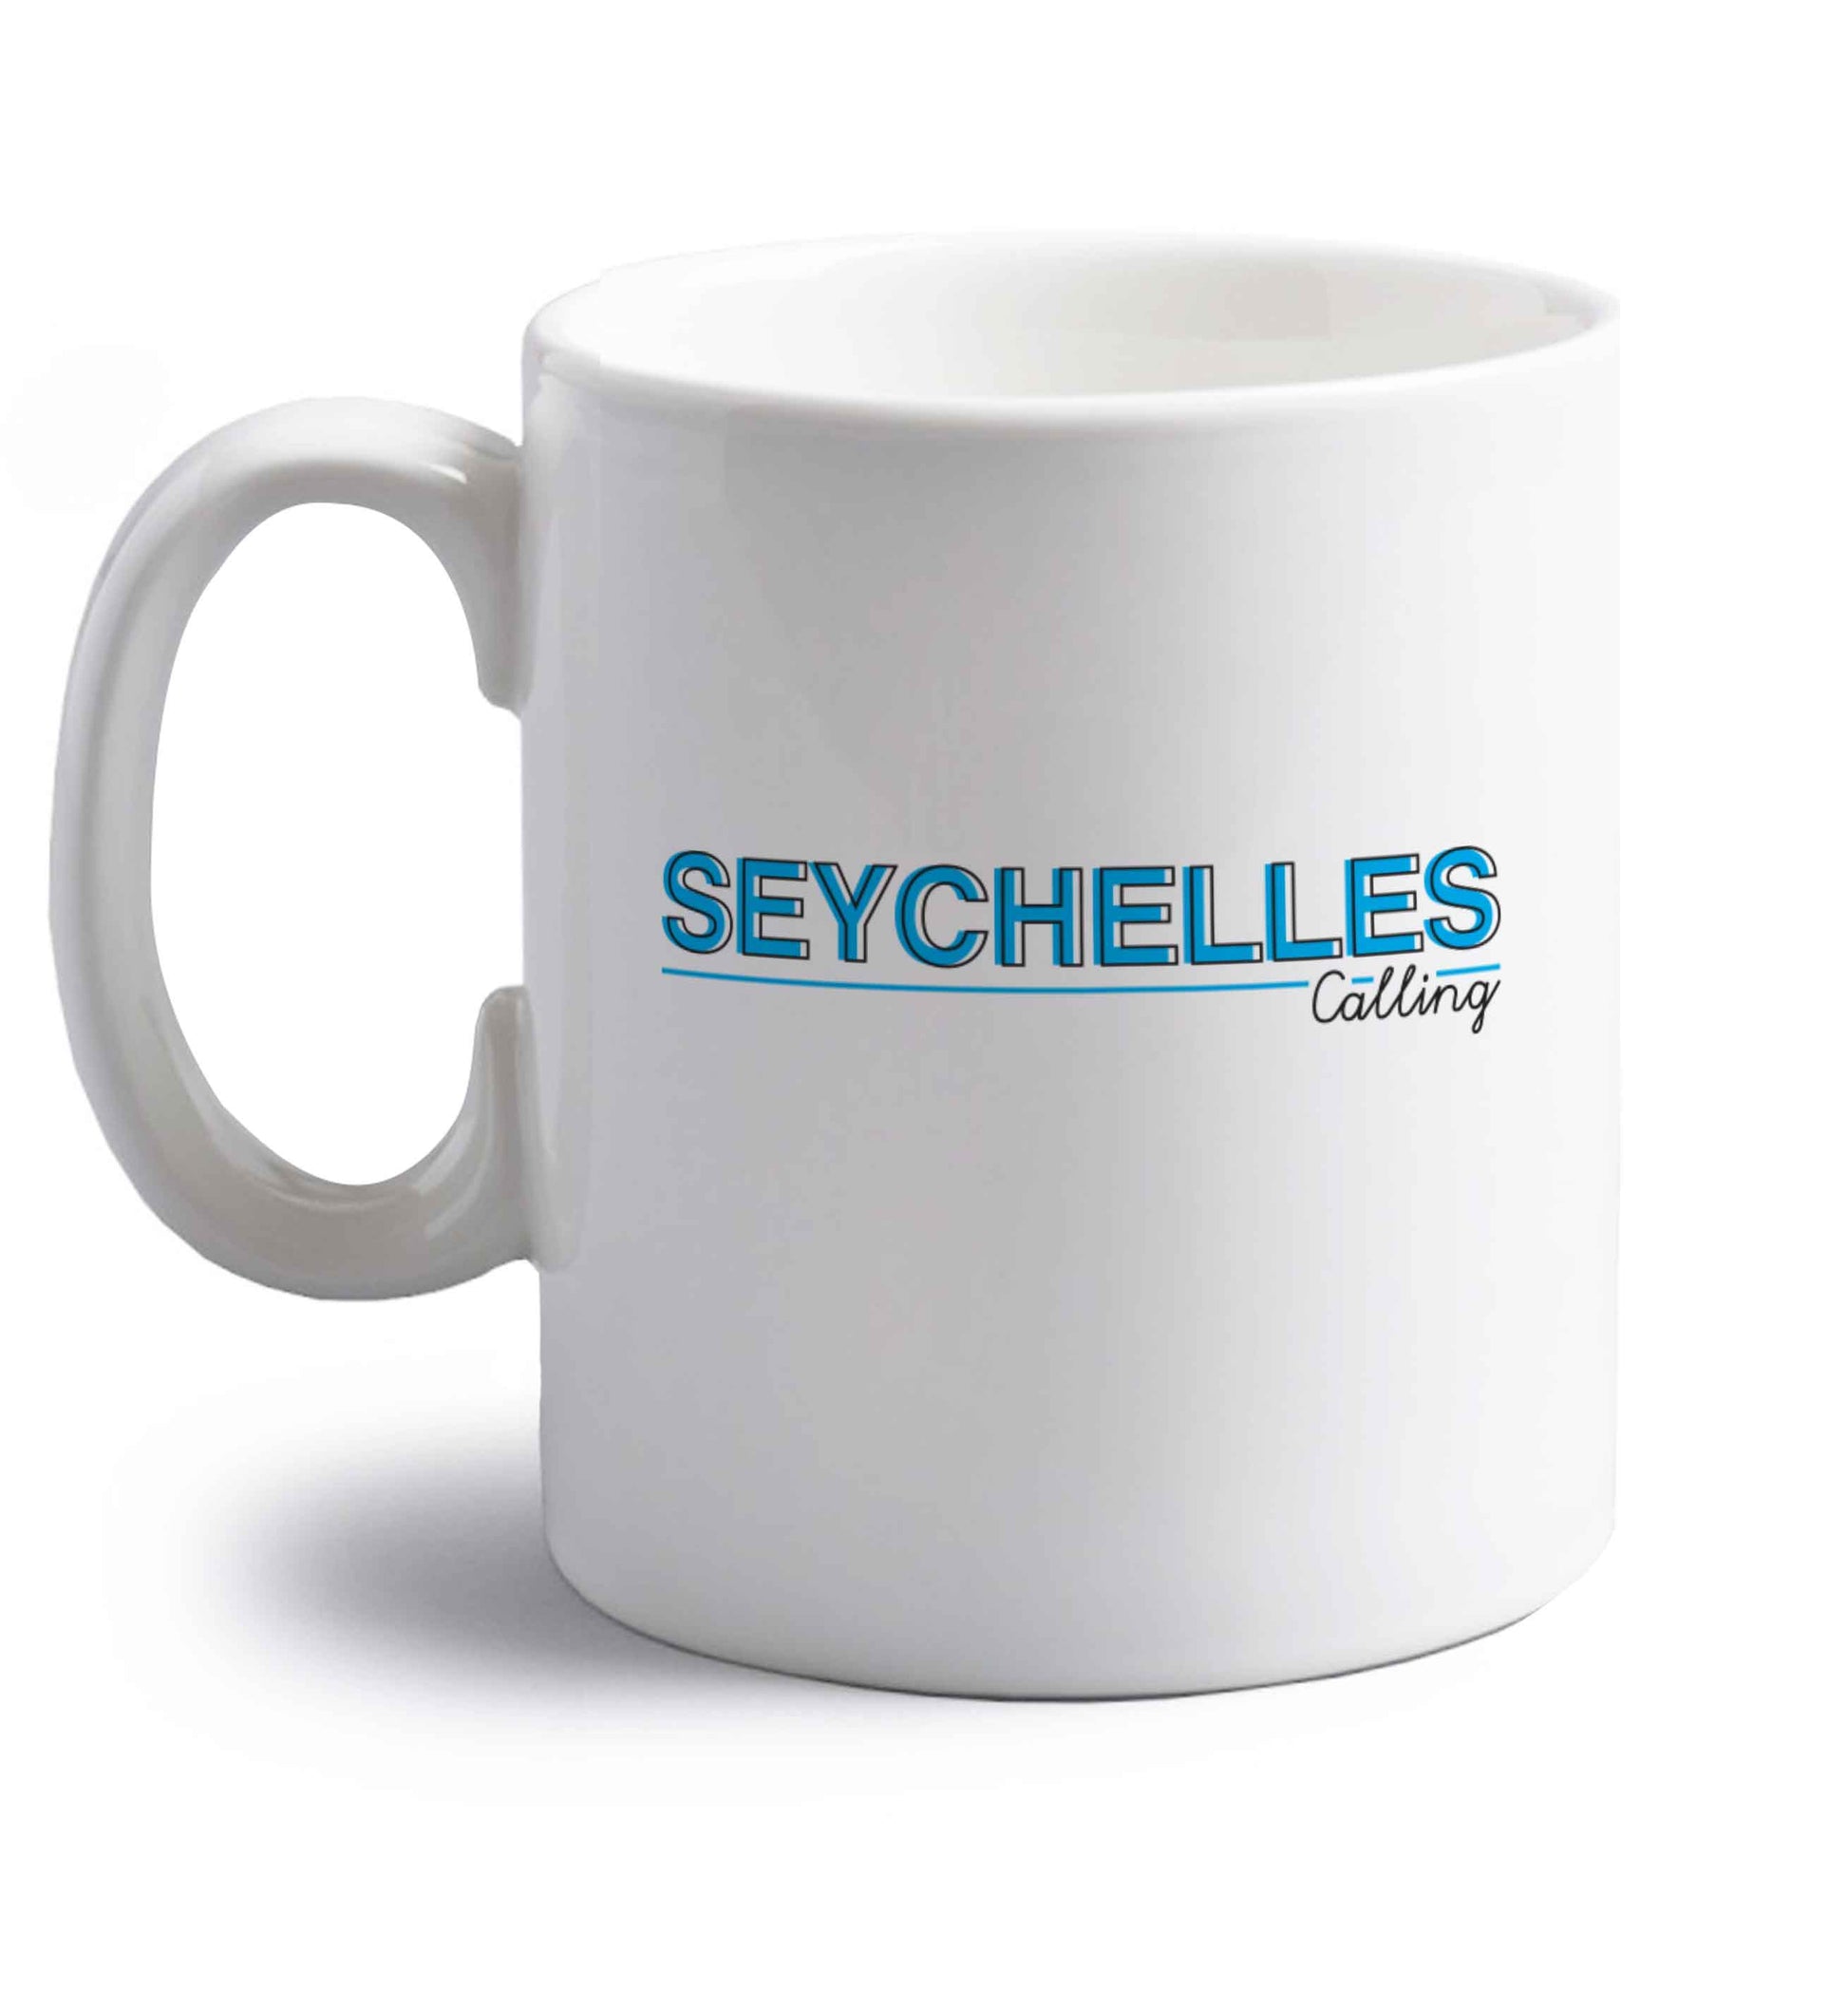 Seychelles calling right handed white ceramic mug 